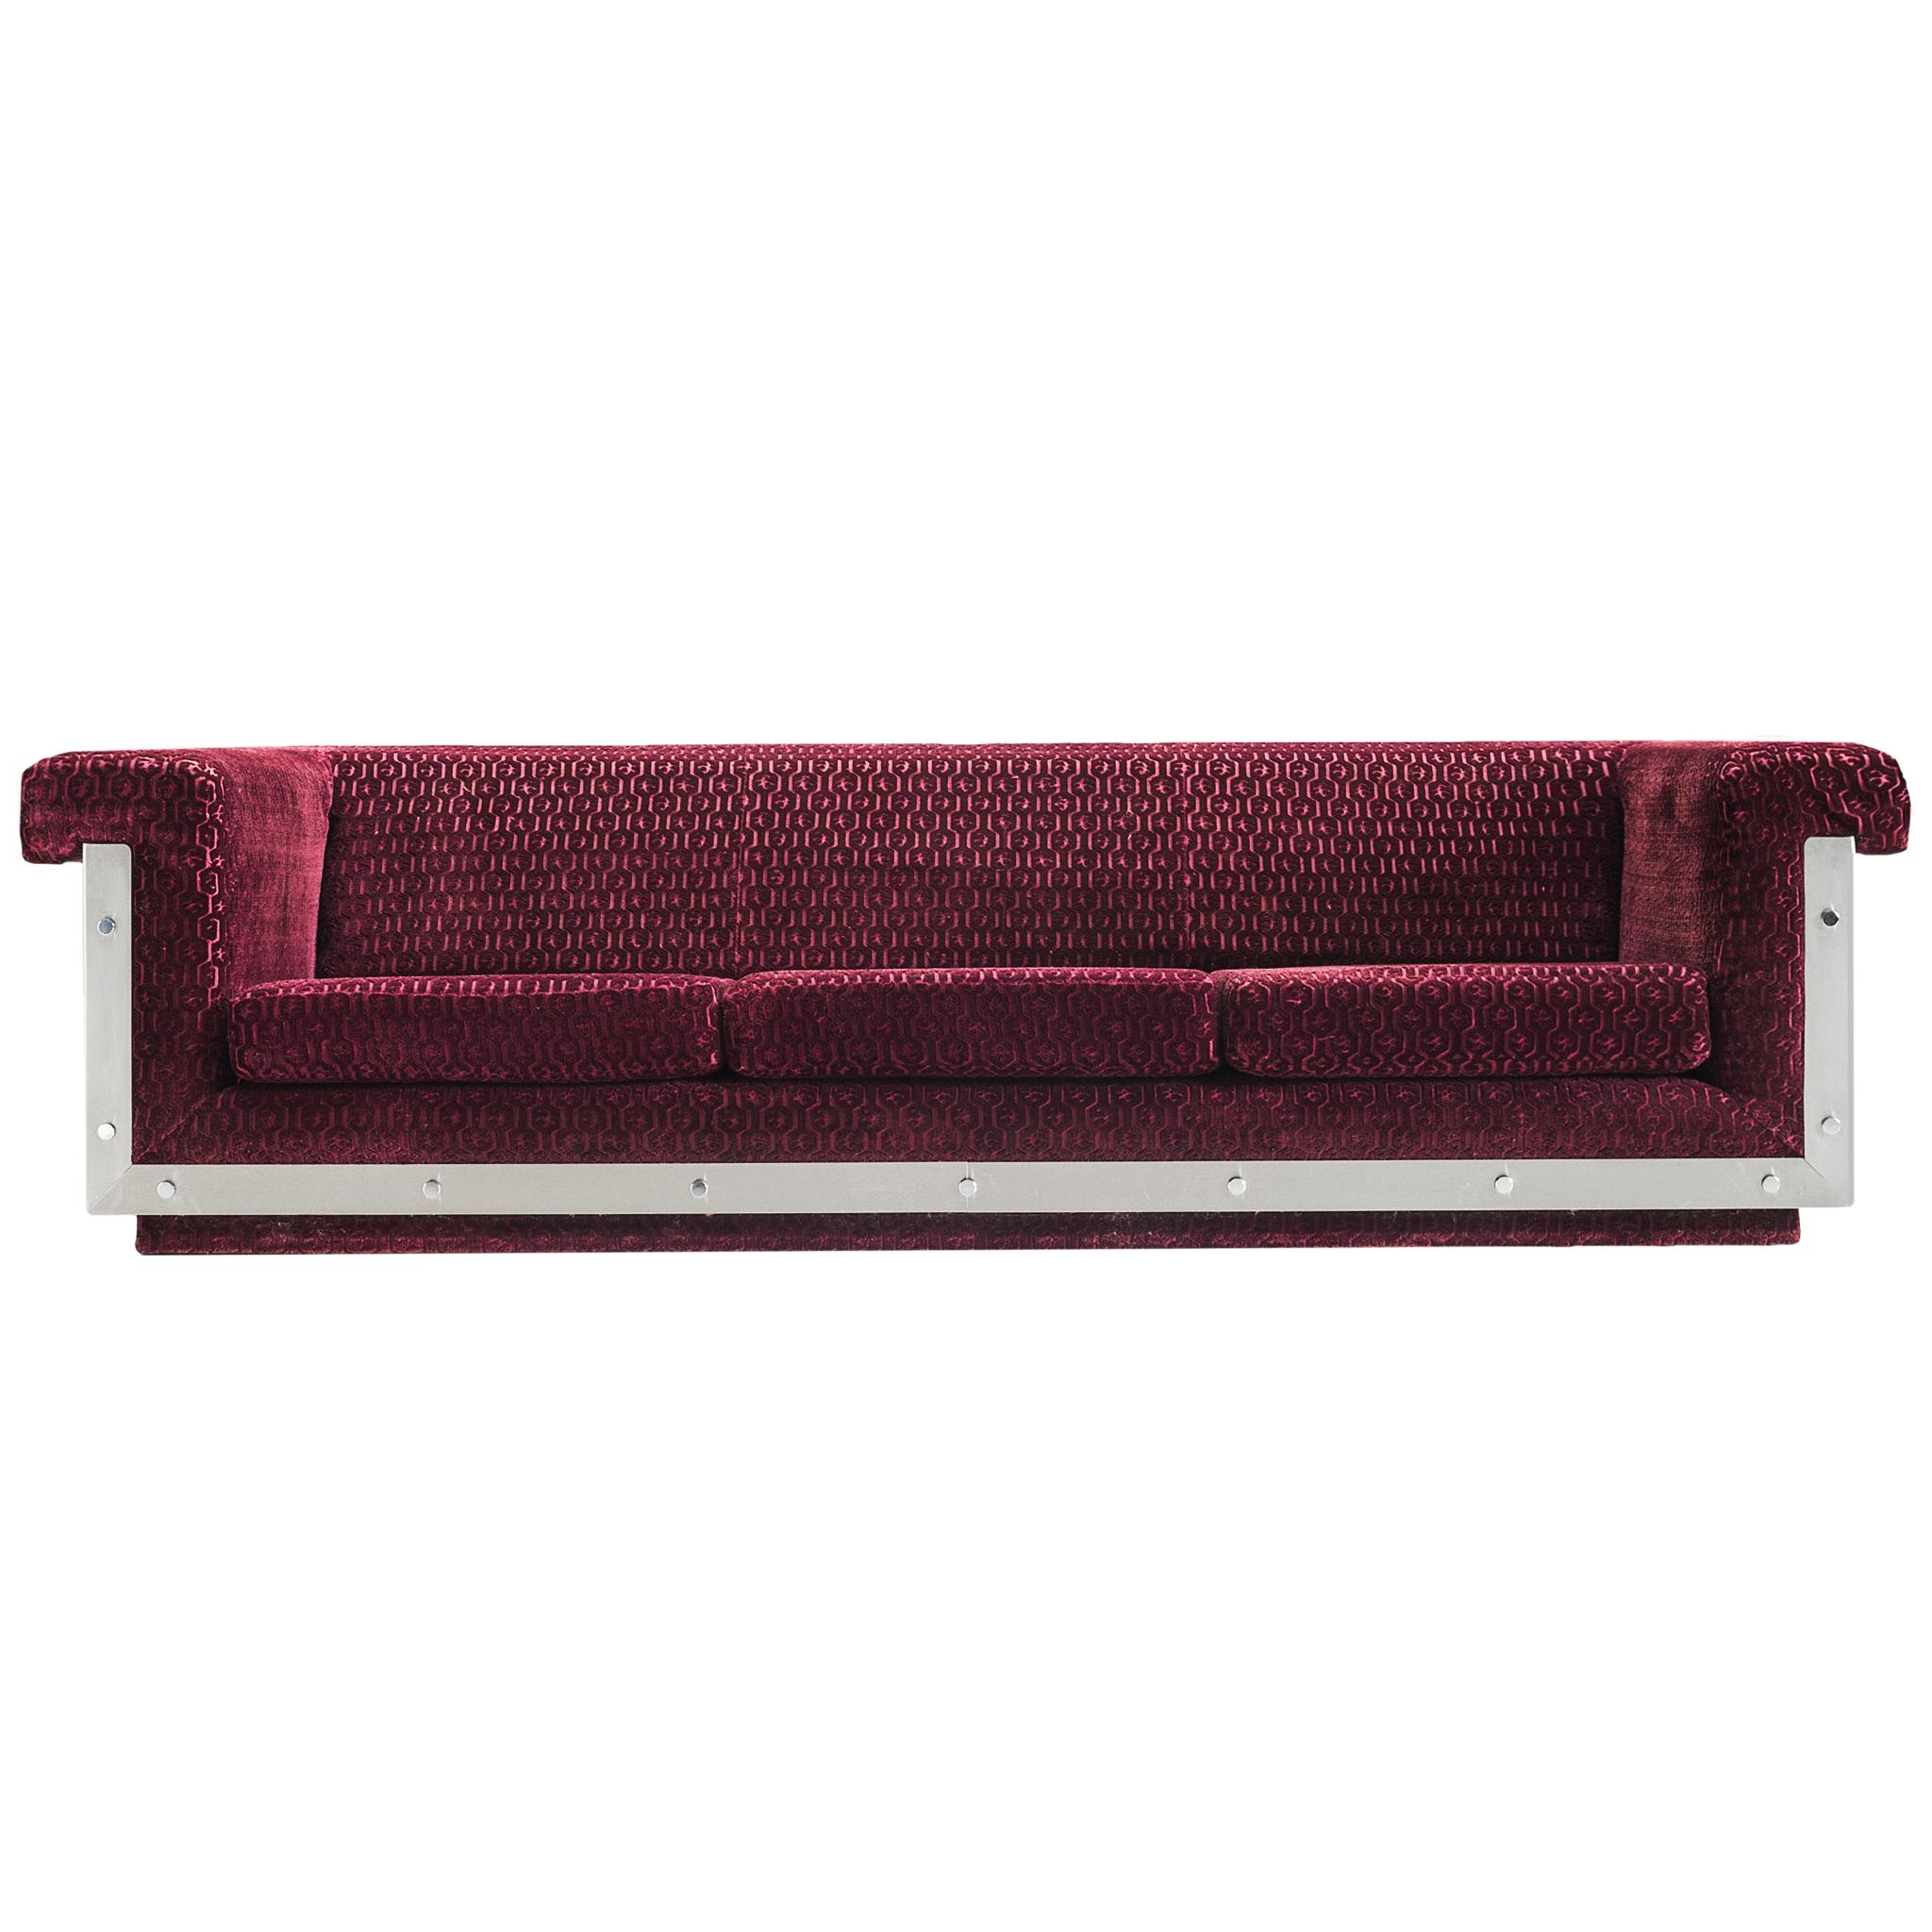 Postmodern French Sofa in Stainless Steel and Burgundy Velvet Upholstery  4